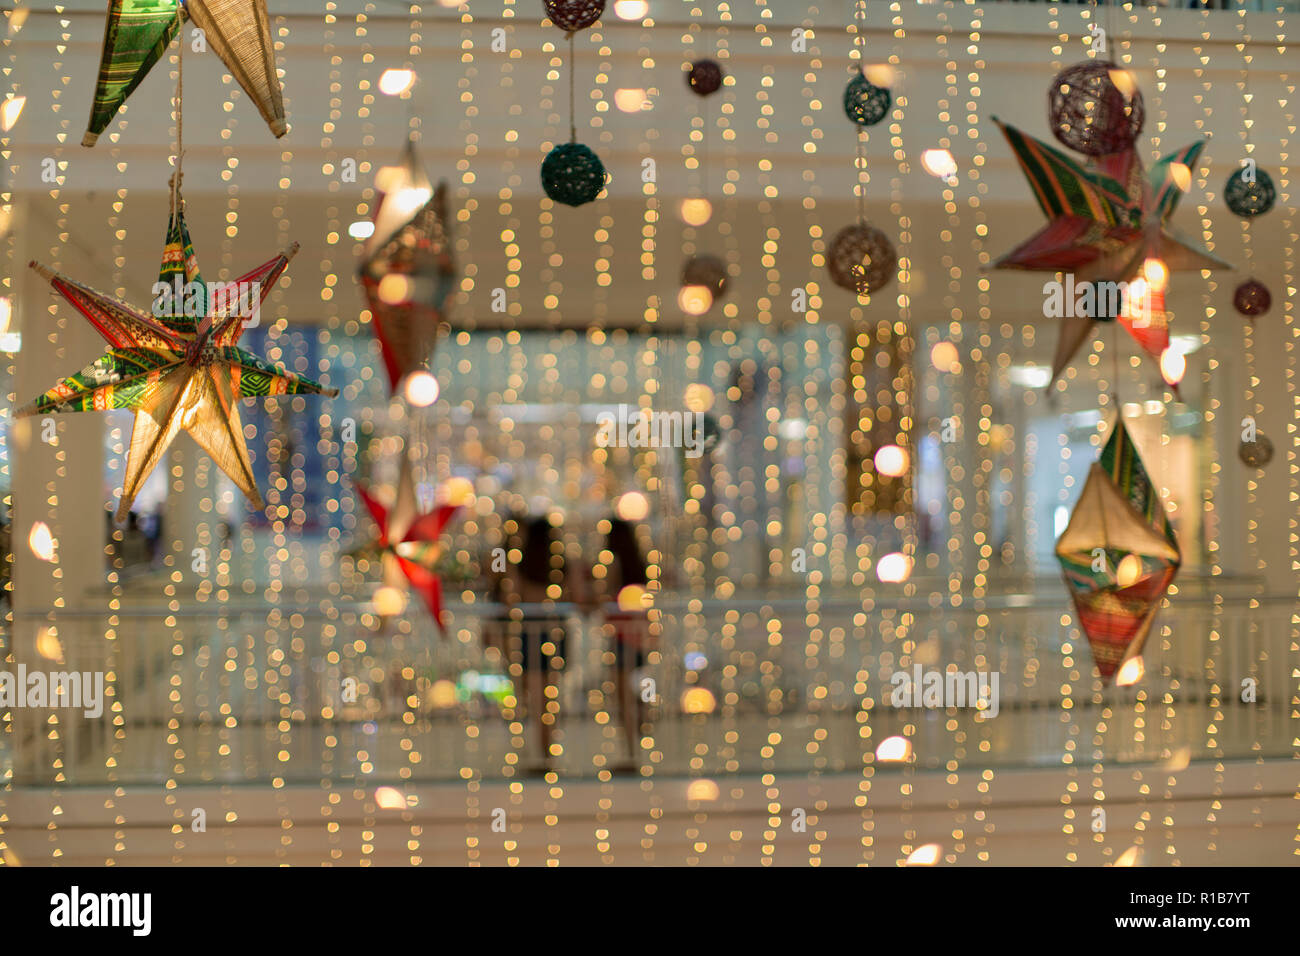 Decorazioni Natalizie Shop On Line.Tenda Di Fairy Fari A Led In Una Decorazione Di Natale Shopping Mall Artistico Foto Astratte Foto Stock Alamy